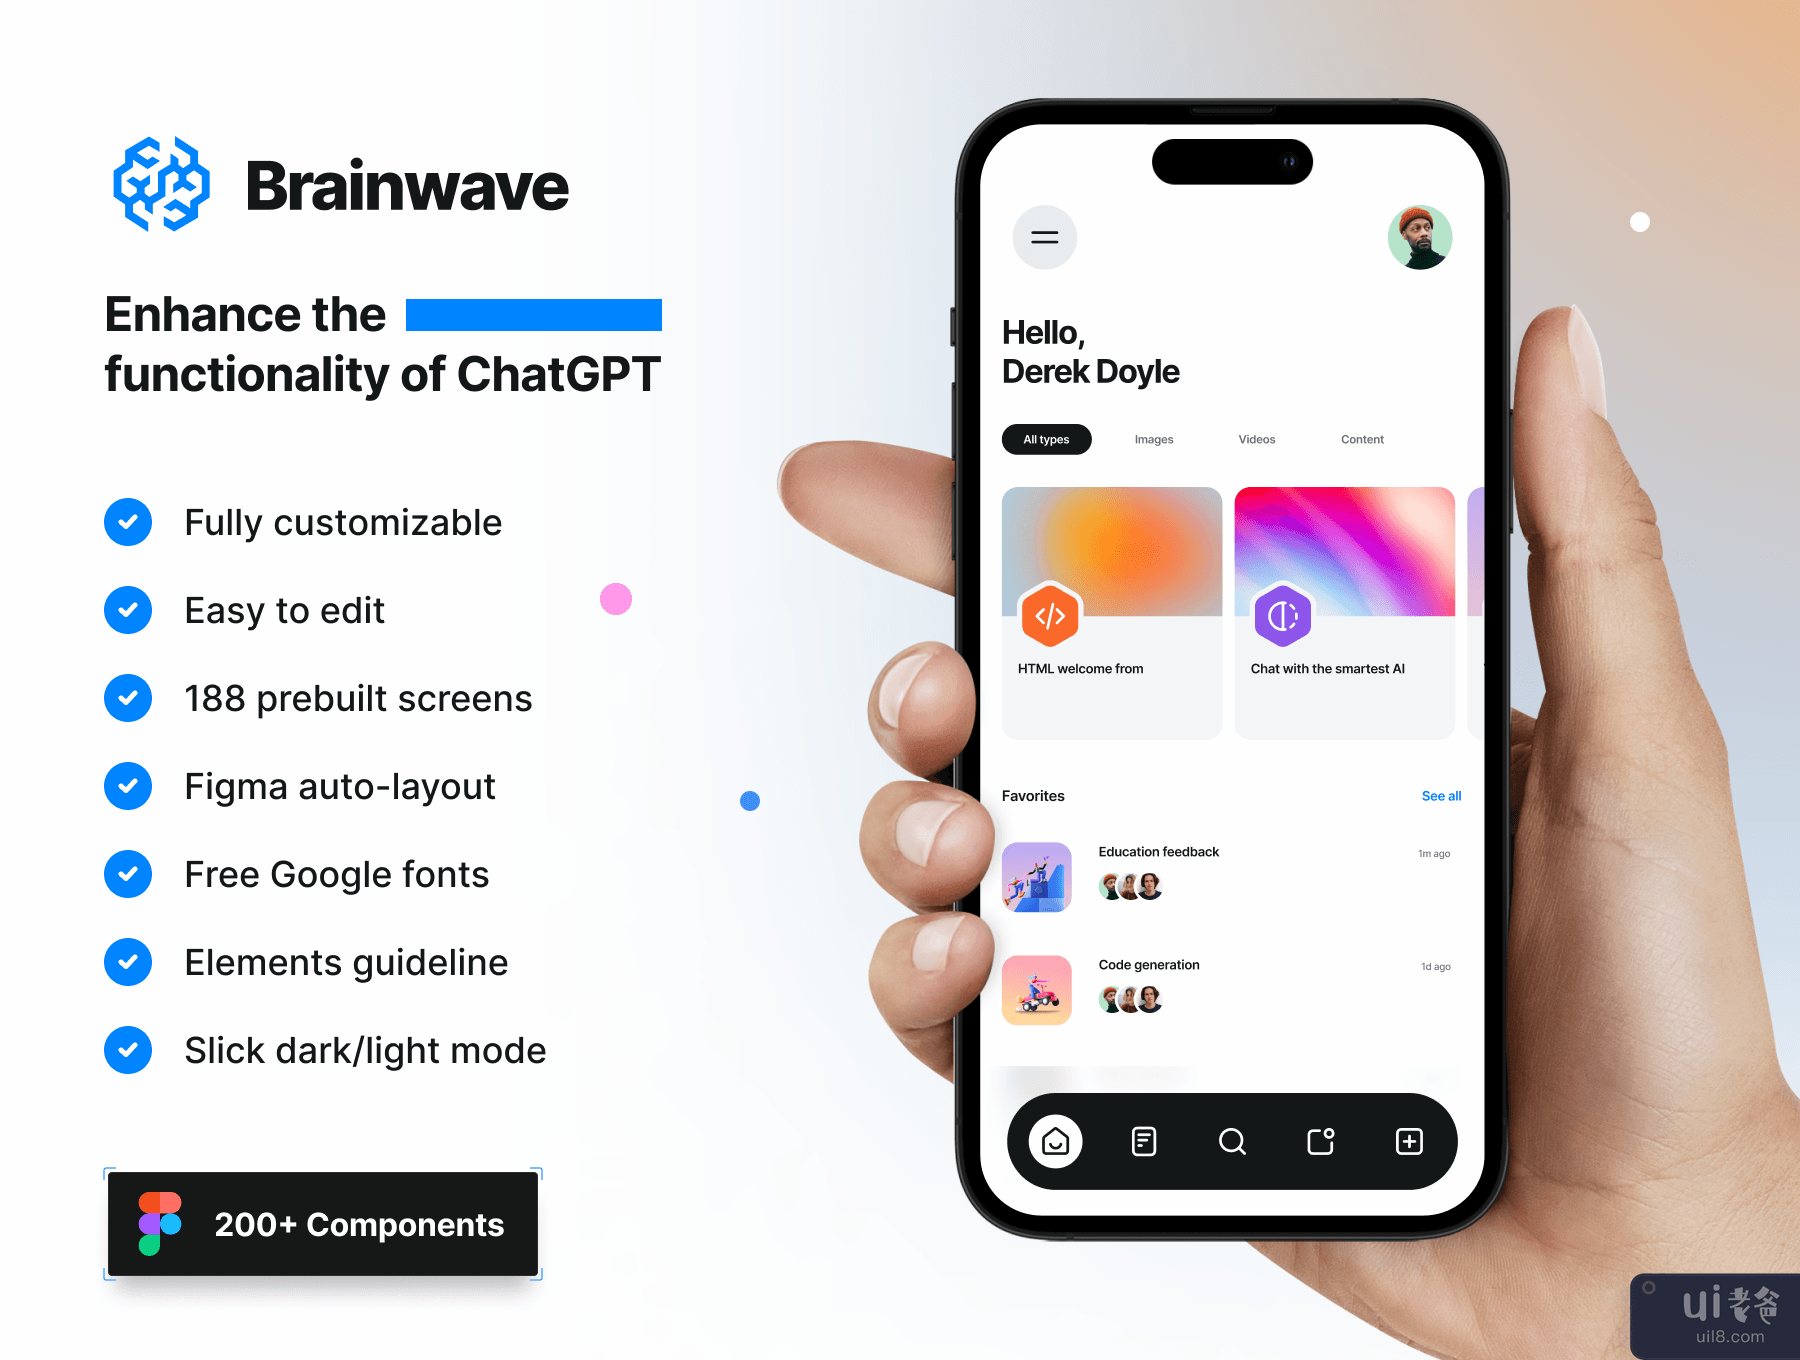 脑波 - 人工智能 iOS UI 工具包 (Brainwave - AI iOS UI Kit)插图7